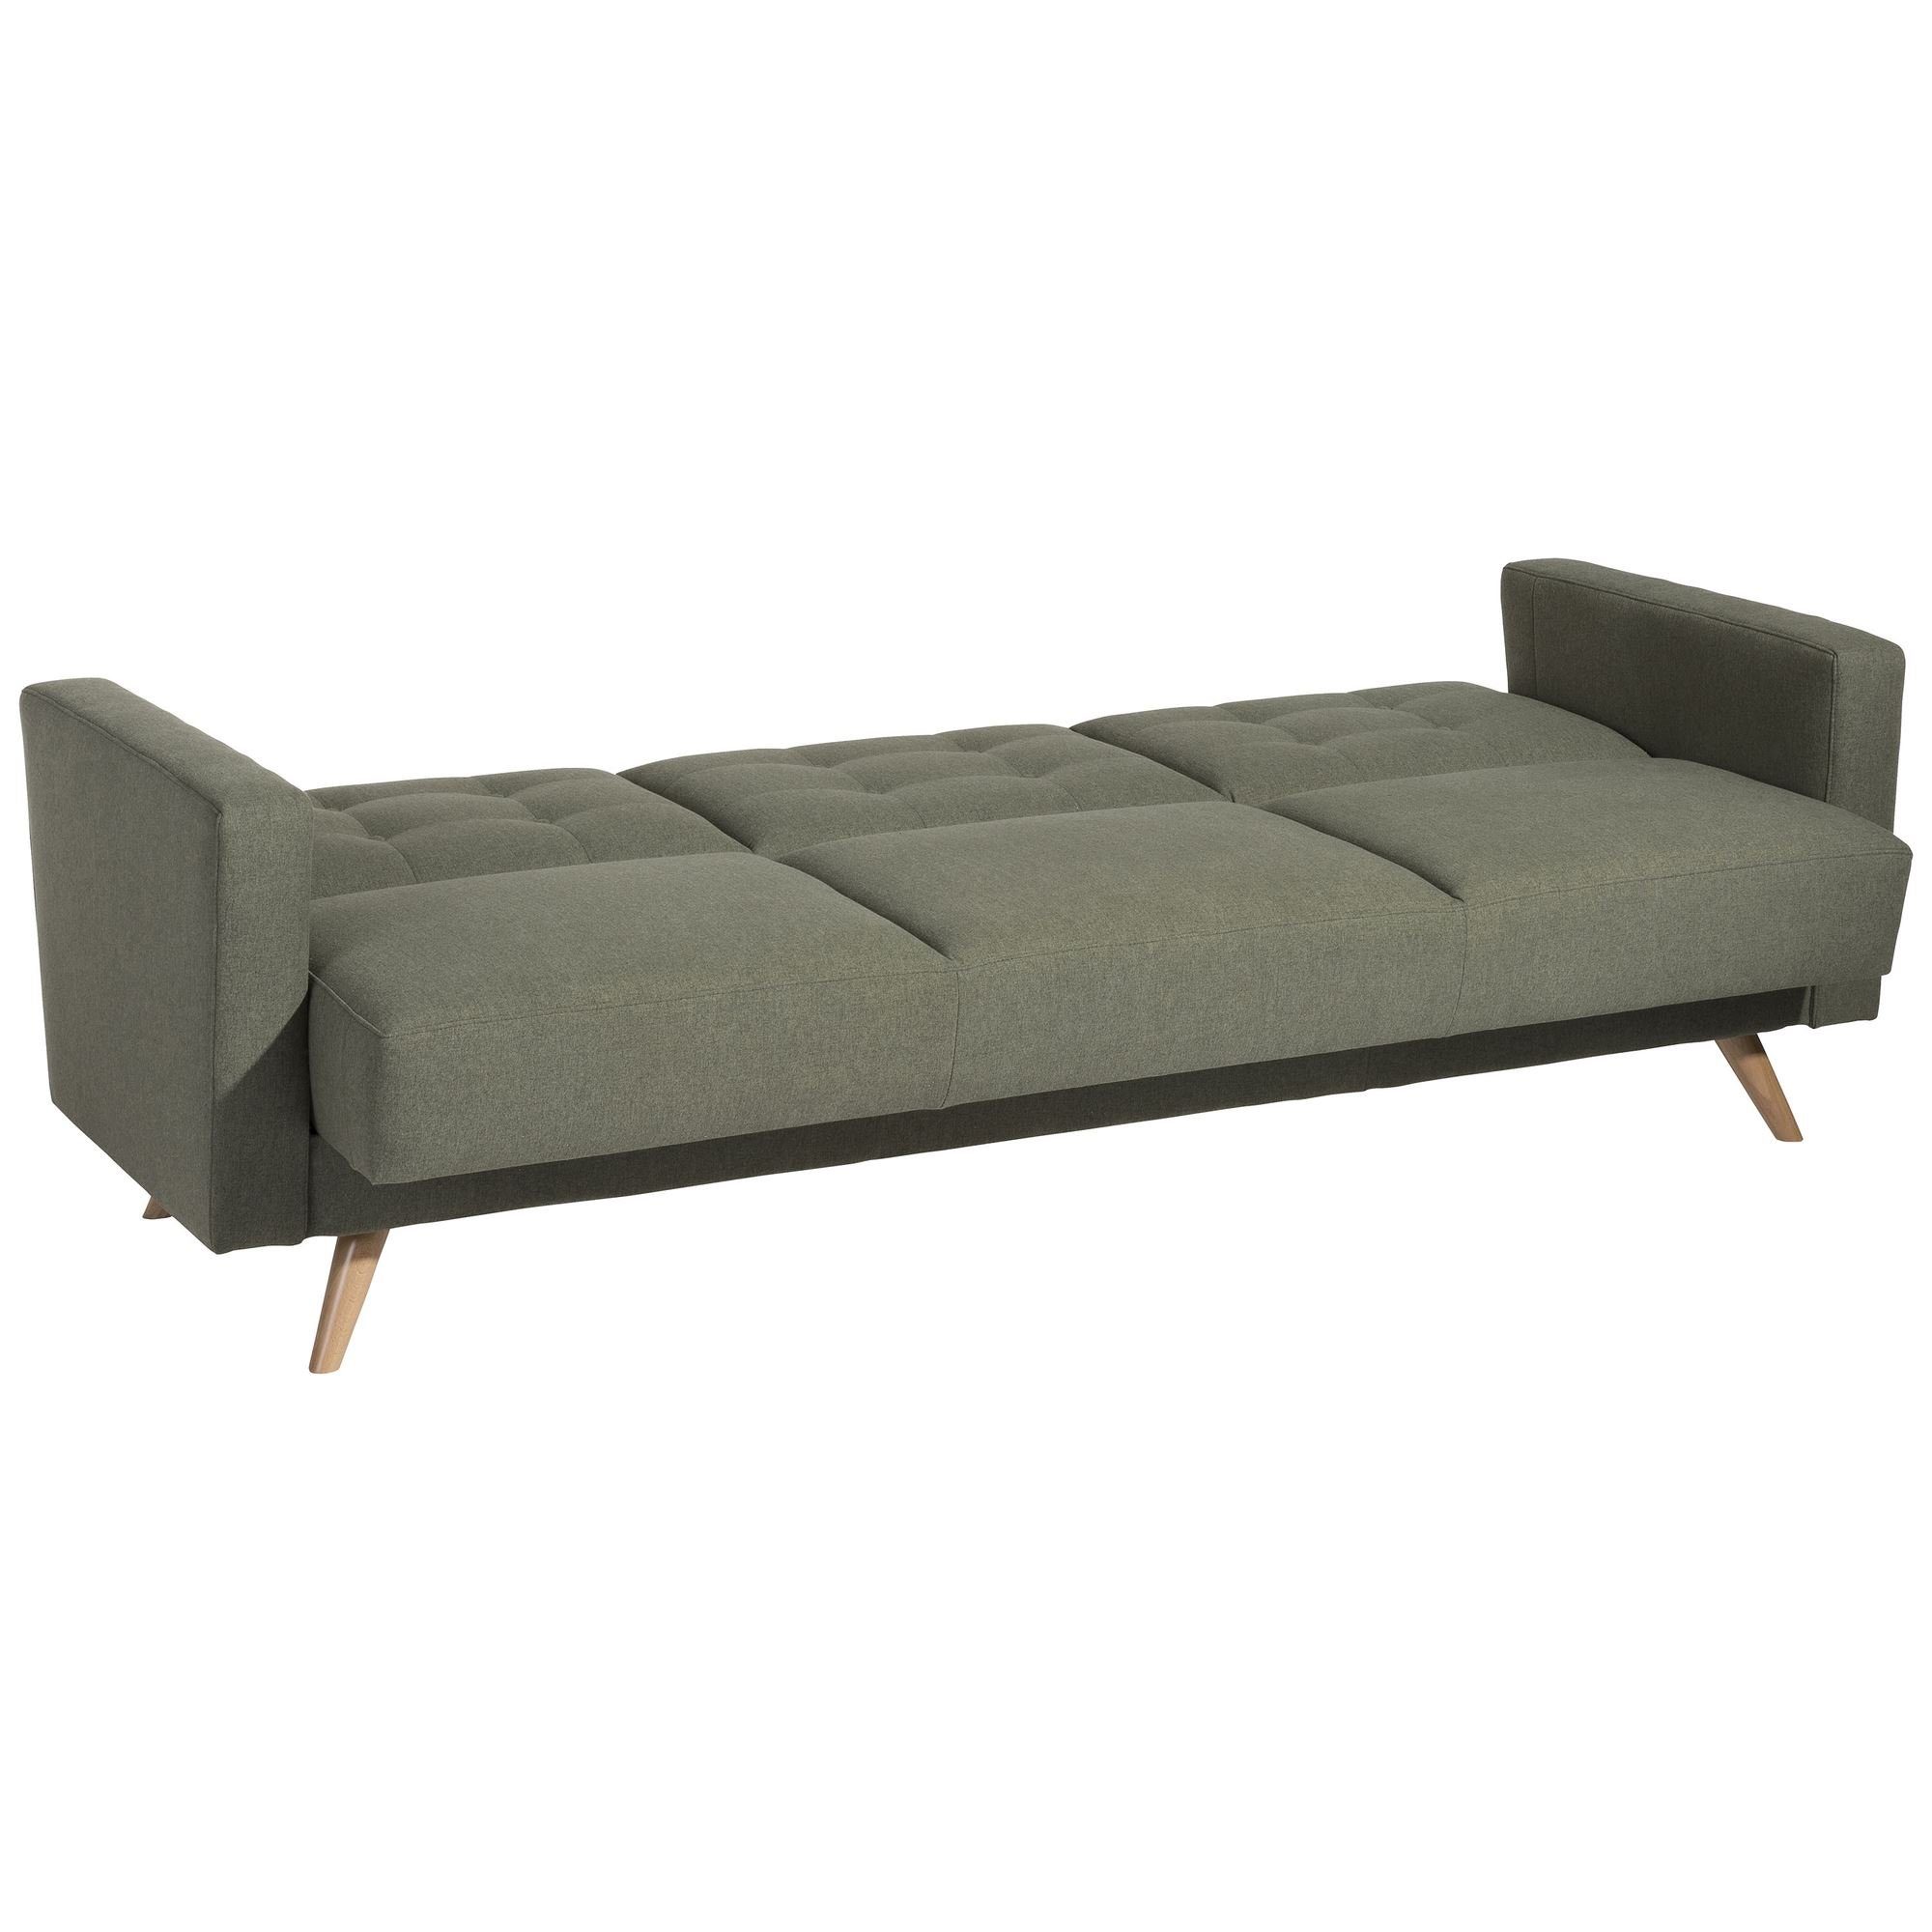 Sitz aufm Kessel 1 58 Kostenlosem Microf, inkl. Bezug Versand Sofa Sofa Bettfunktion hochwertig Teile, verarbeitet,bequemer 3-Sitzer mit Karisa Sparpreis